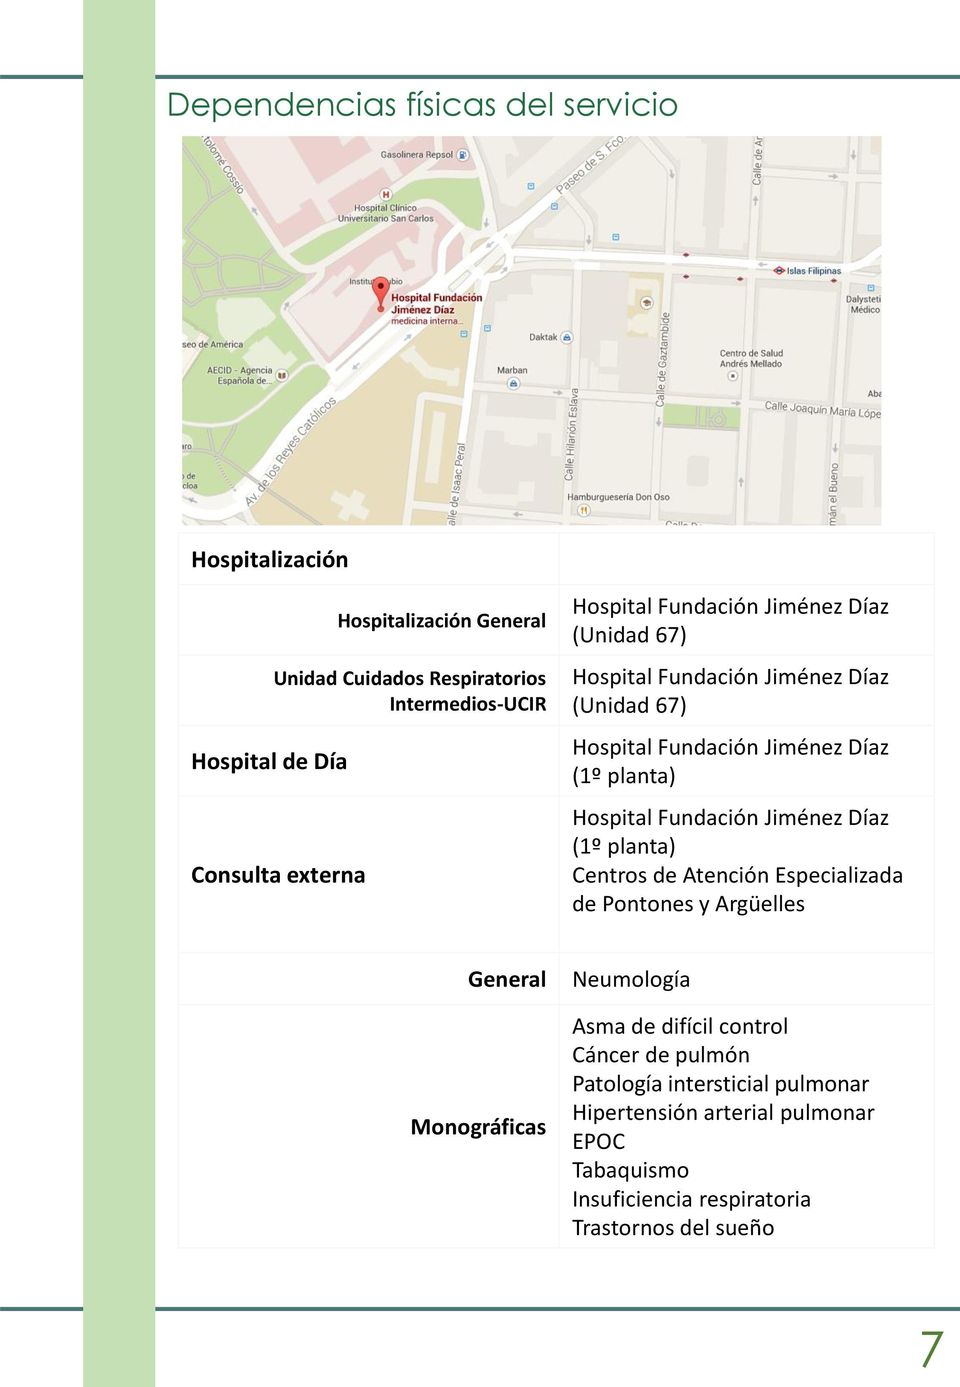 Hospital Fundación Jiménez Díaz (1º planta) Centros de Atención Especializada de Pontones y Argüelles General Monográficas Neumología Asma de